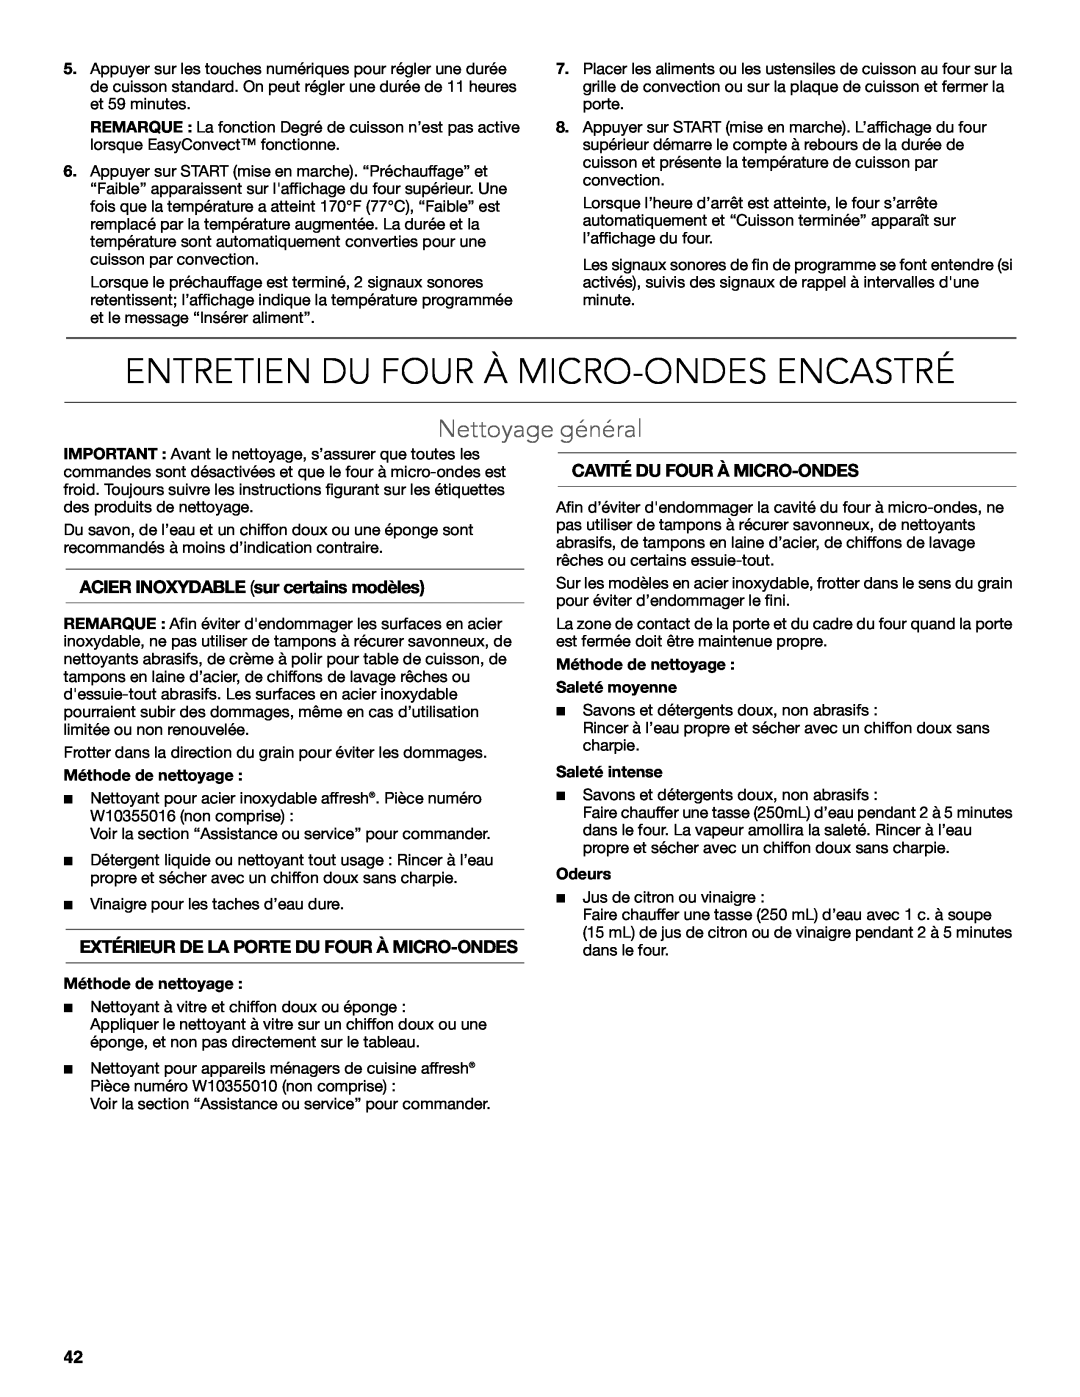 KitchenAid KBHS179B Entretien Du Four À Micro-Ondes Encastré, Nettoyage général, ACIER INOXYDABLE sur certains modèles 